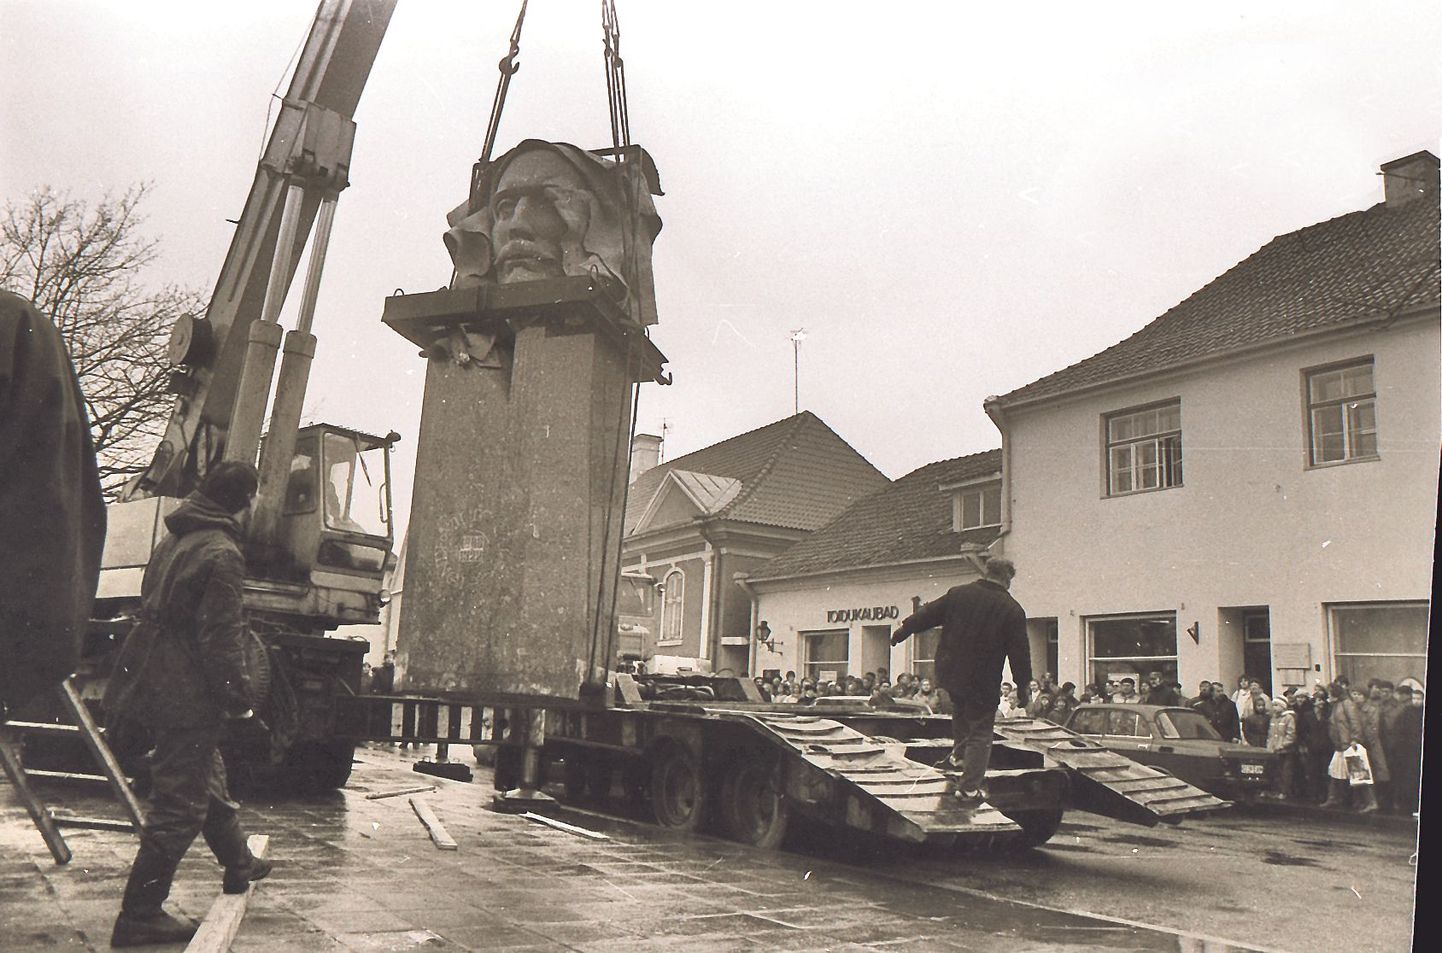 “MIKIVER”: Monument avati 26. märtsil 1988. aastal (Viktor Kingissepa 100. sünniaastapäeval) Kuressaare keskväljakul. Teisaldati 18. aprillil 1989 ja oli seejärel mõne kuu eksponeeritud Marientali pargis Kuressaares.